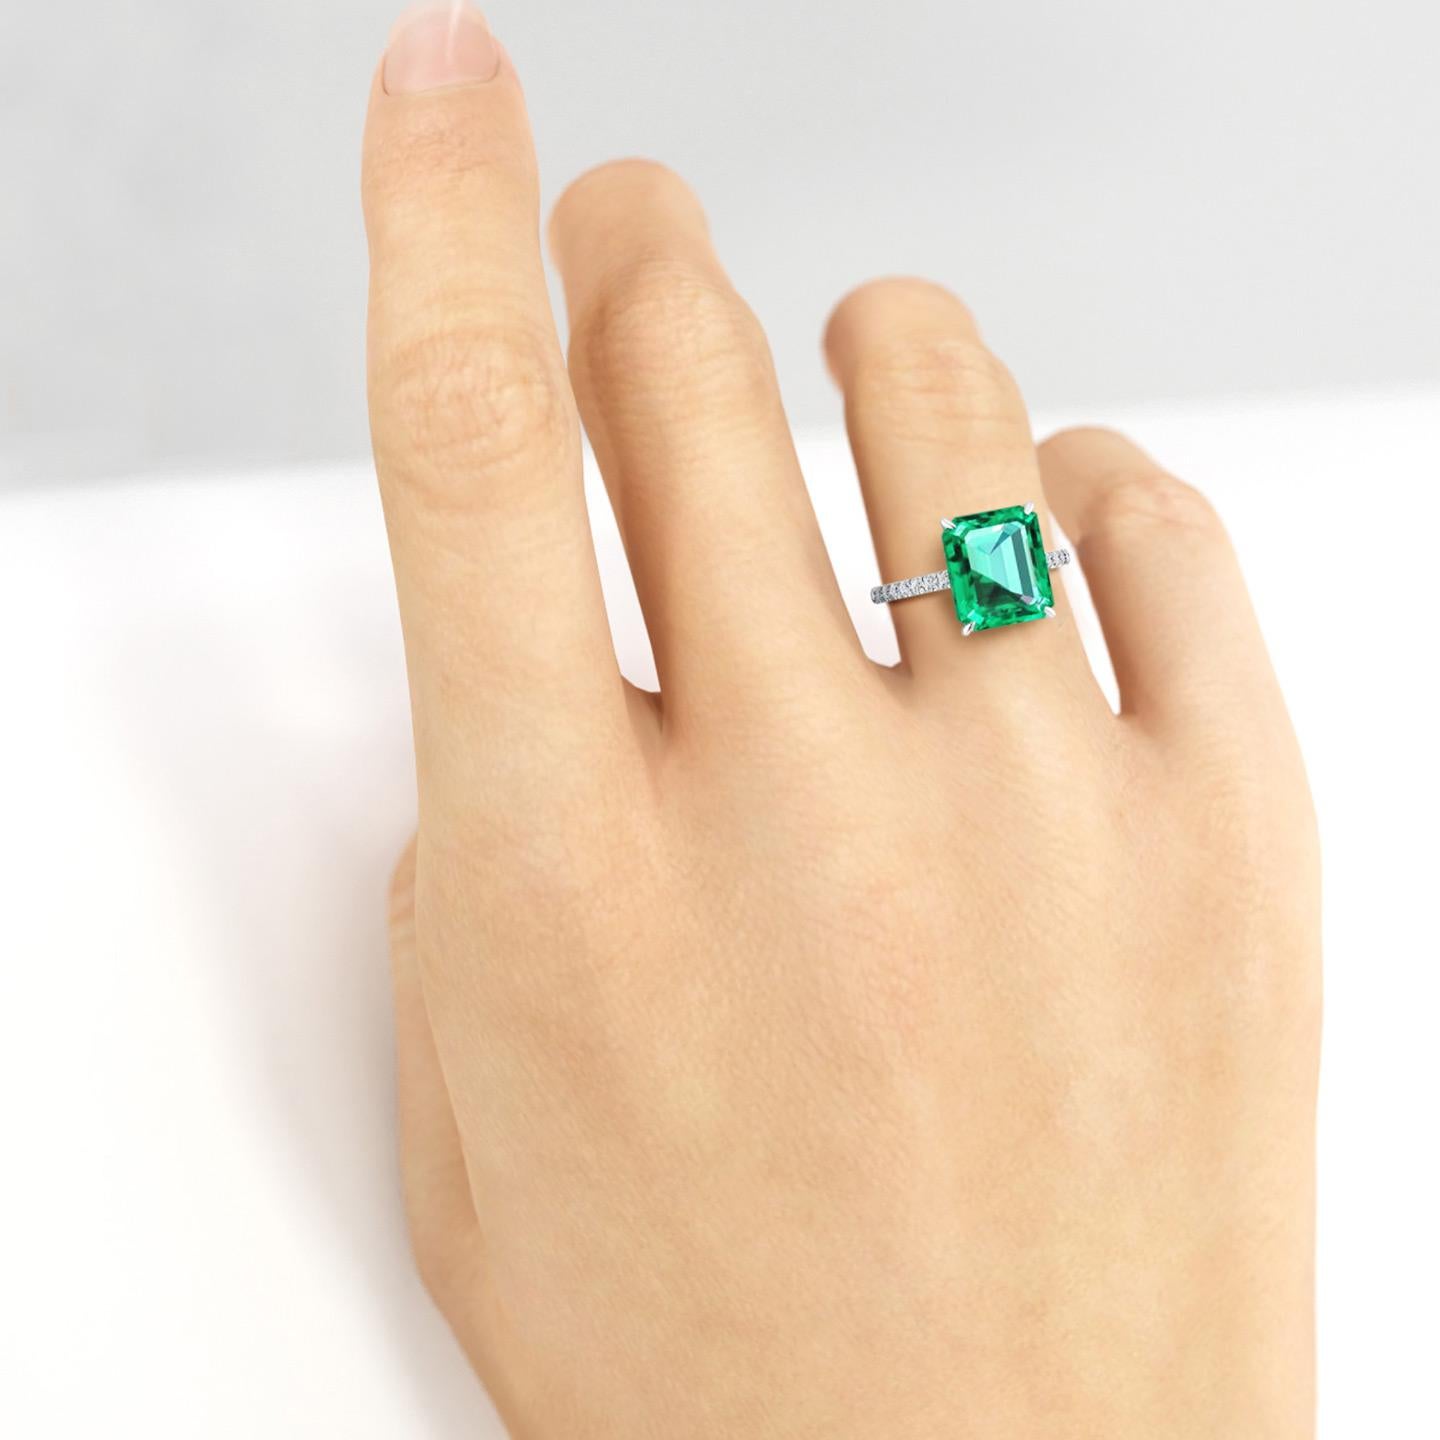 FERRUCCI GIA Certified 4.53 Carat Emerald Cut Emerald Diamond Platinum Ring 1